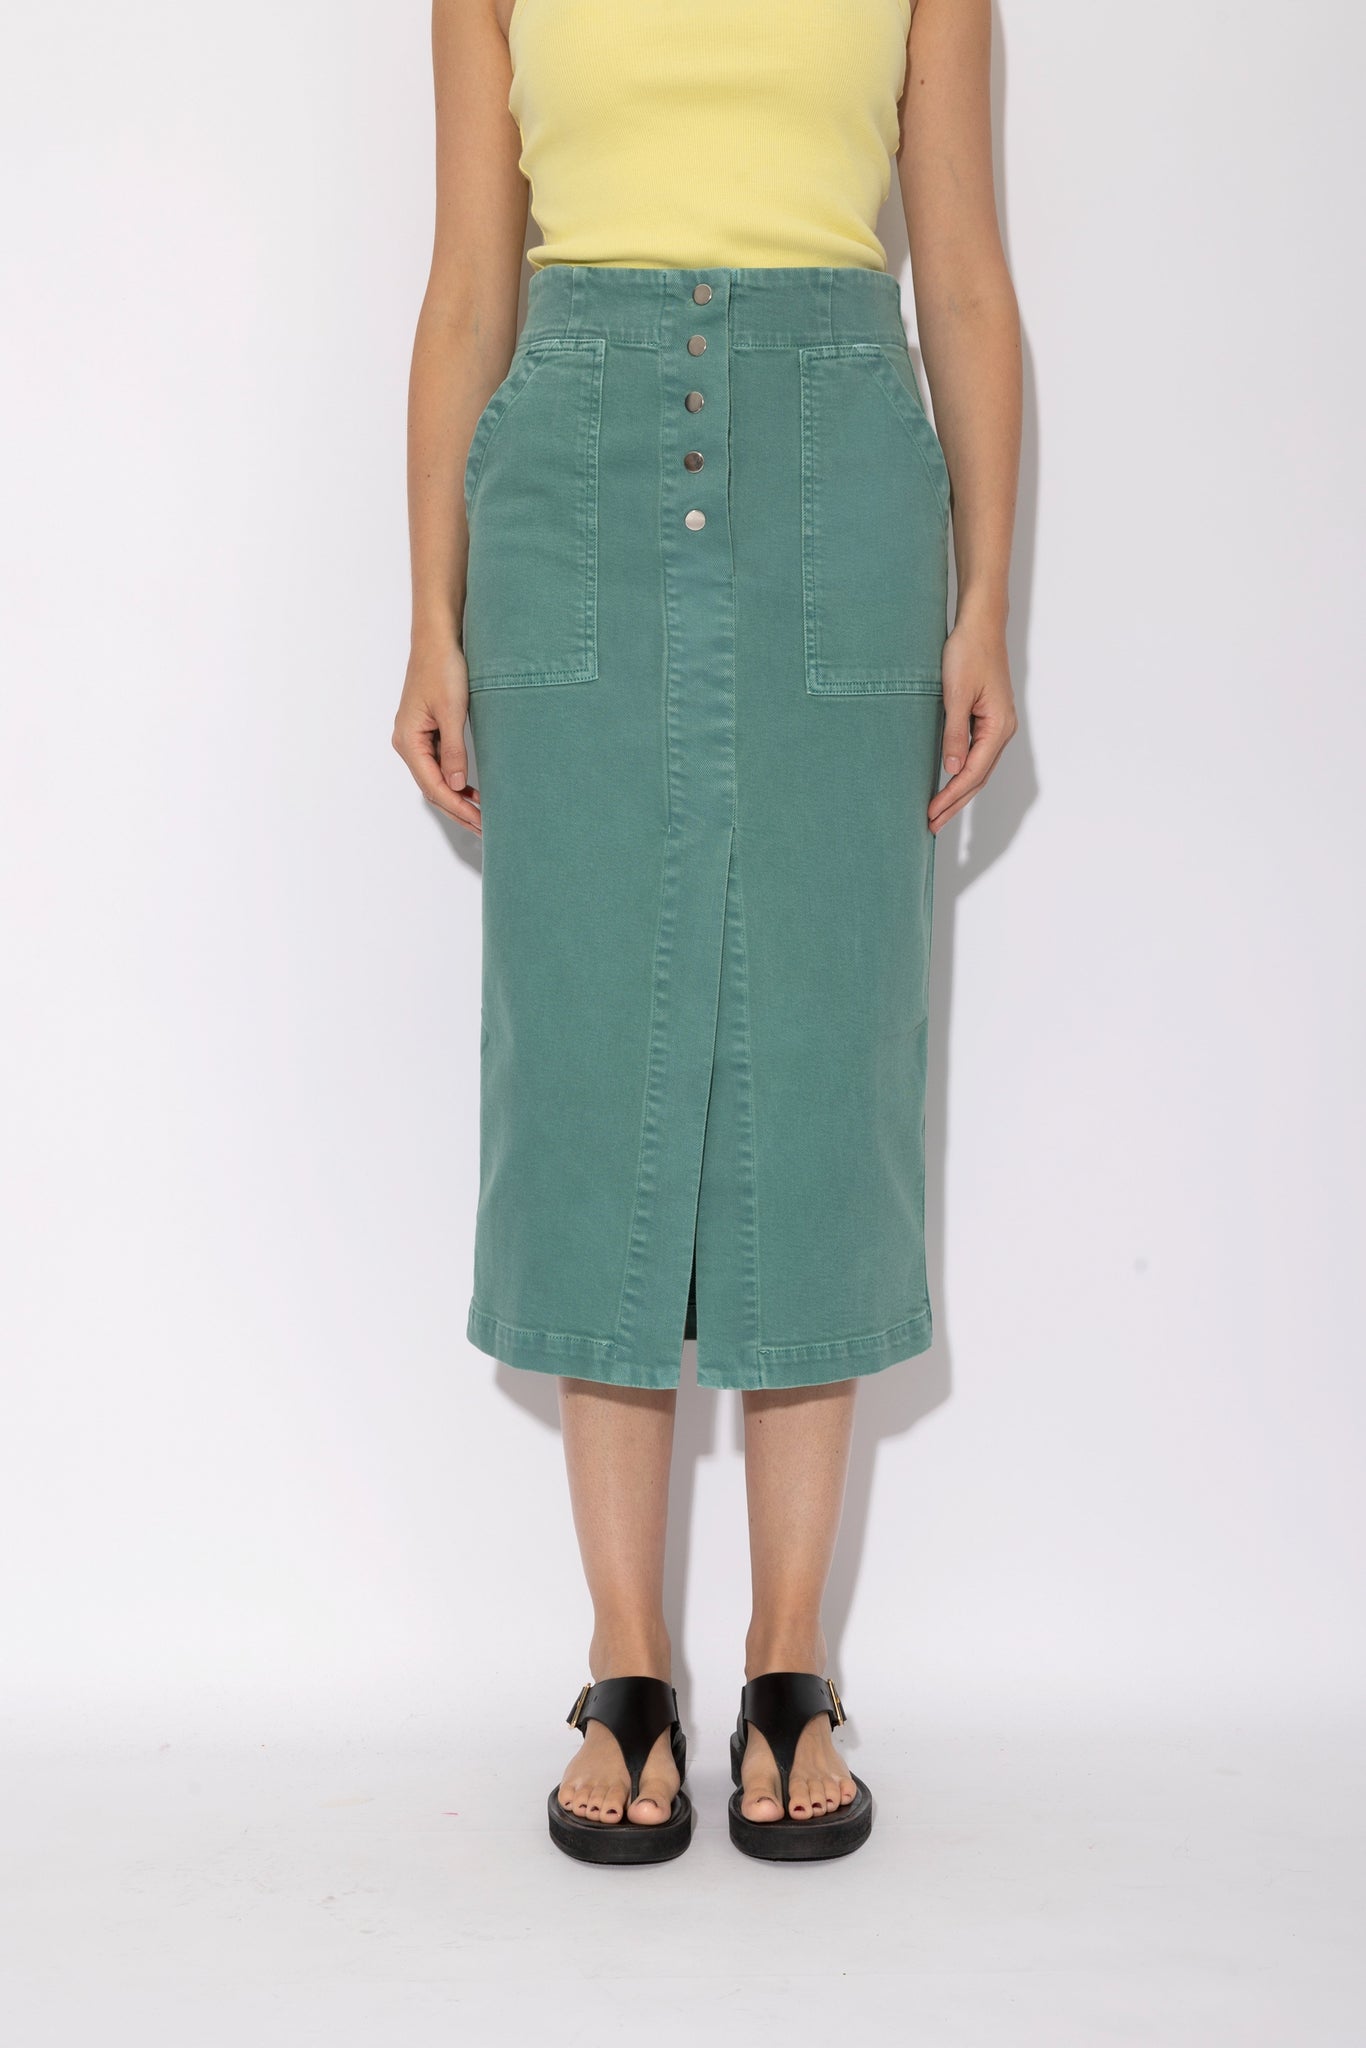 STACEY skirt | AQUA GREEN